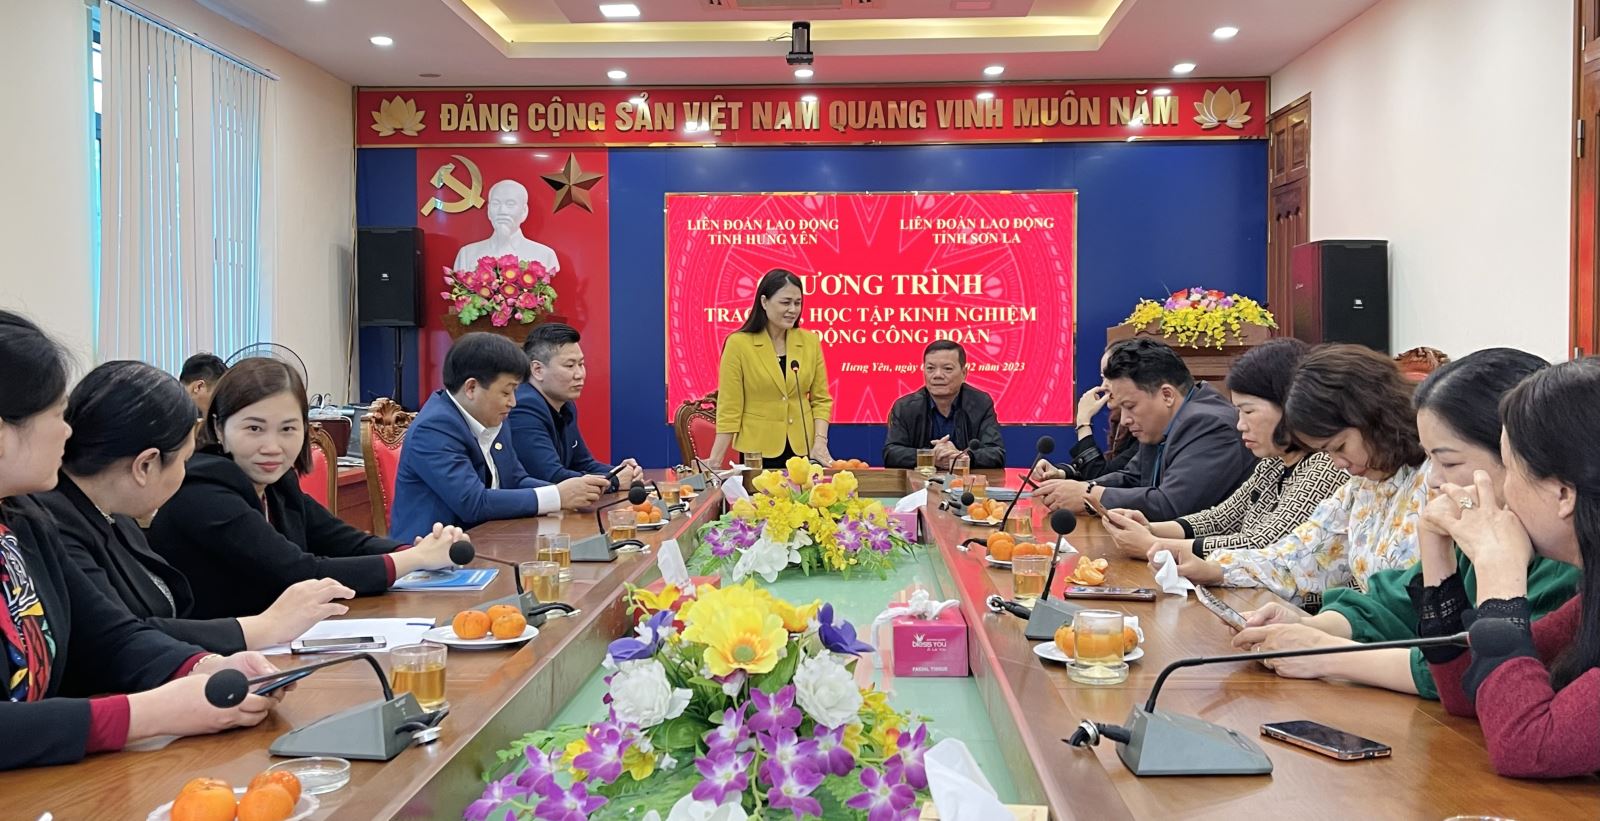 Liên đoàn Lao động tỉnh Hưng Yên và Liên đoàn Lao động tỉnh Sơn La tổ chức chương trình trao đổi, học tập kinh nghiệm hoạt động công đoàn